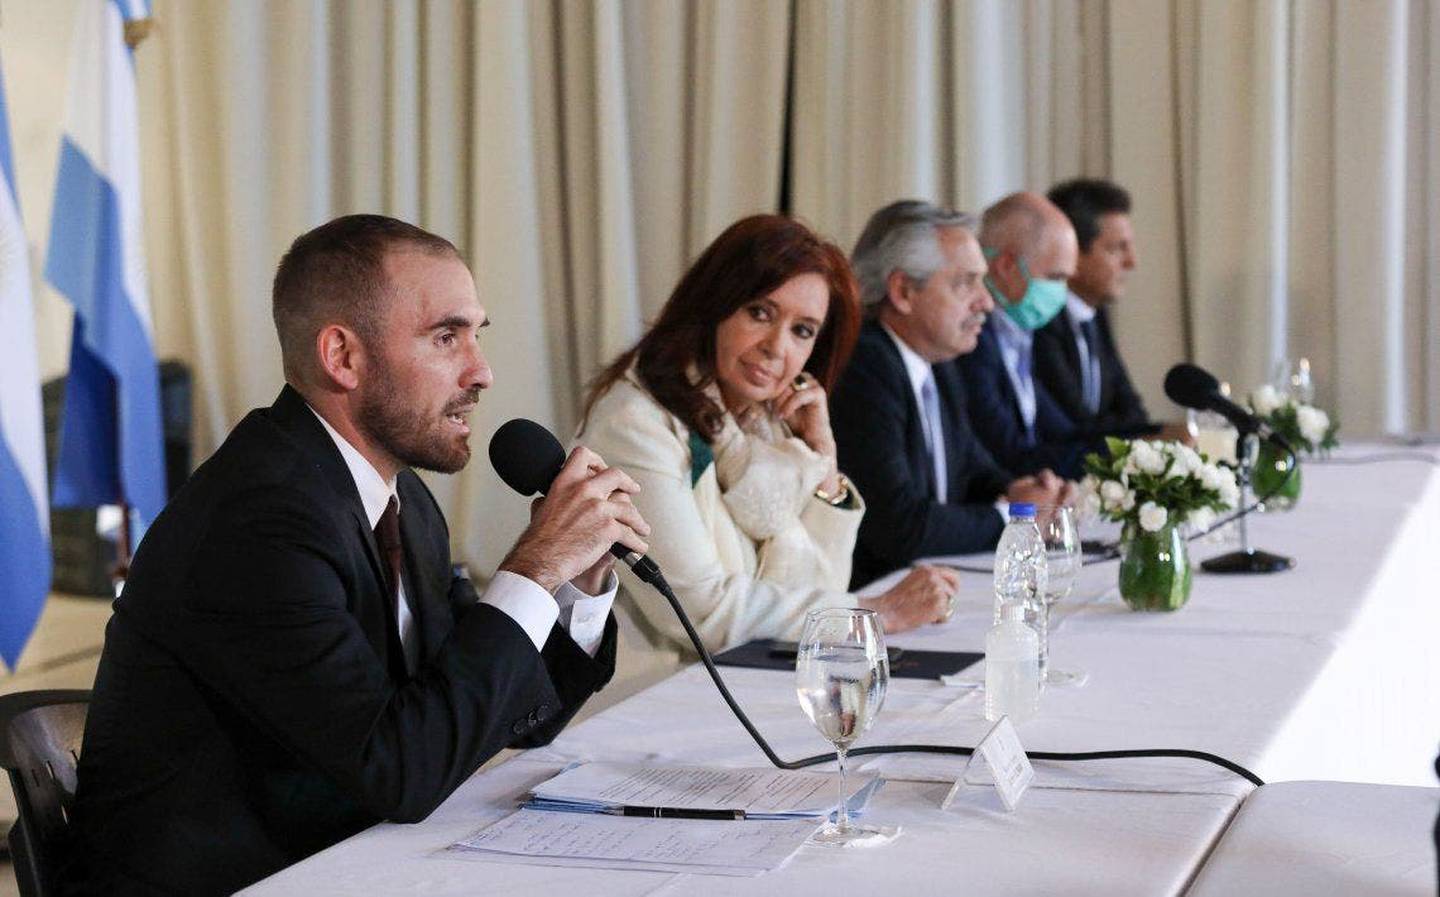 La vicepresidenta Cristina Kirchner sostuvo que EEUU "se lleva las palmas" con el déficit fiscal.dfd